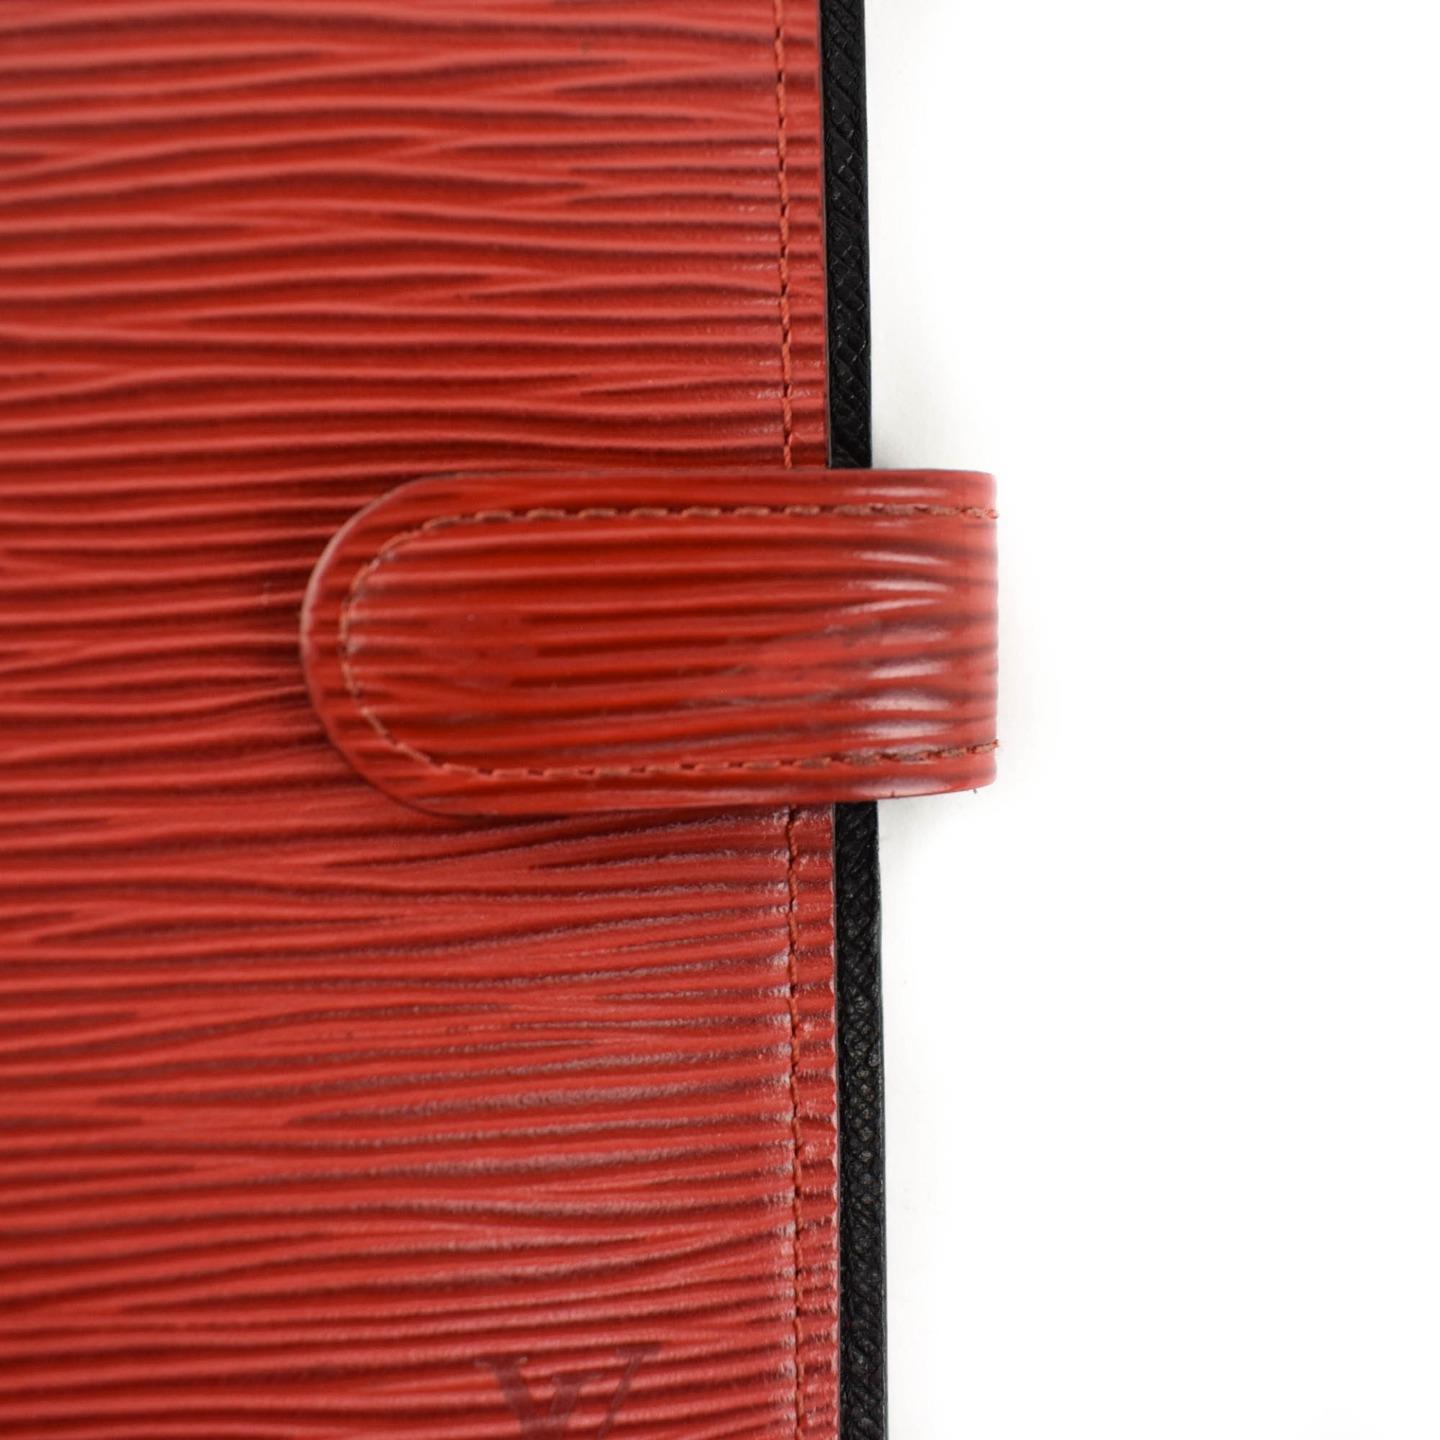 LOUIS VUITTON &quot;Epi&quot;: Red, Leather & &quot;LV&quot; Logo Folding Wallet/Agenda (tn) | eBay